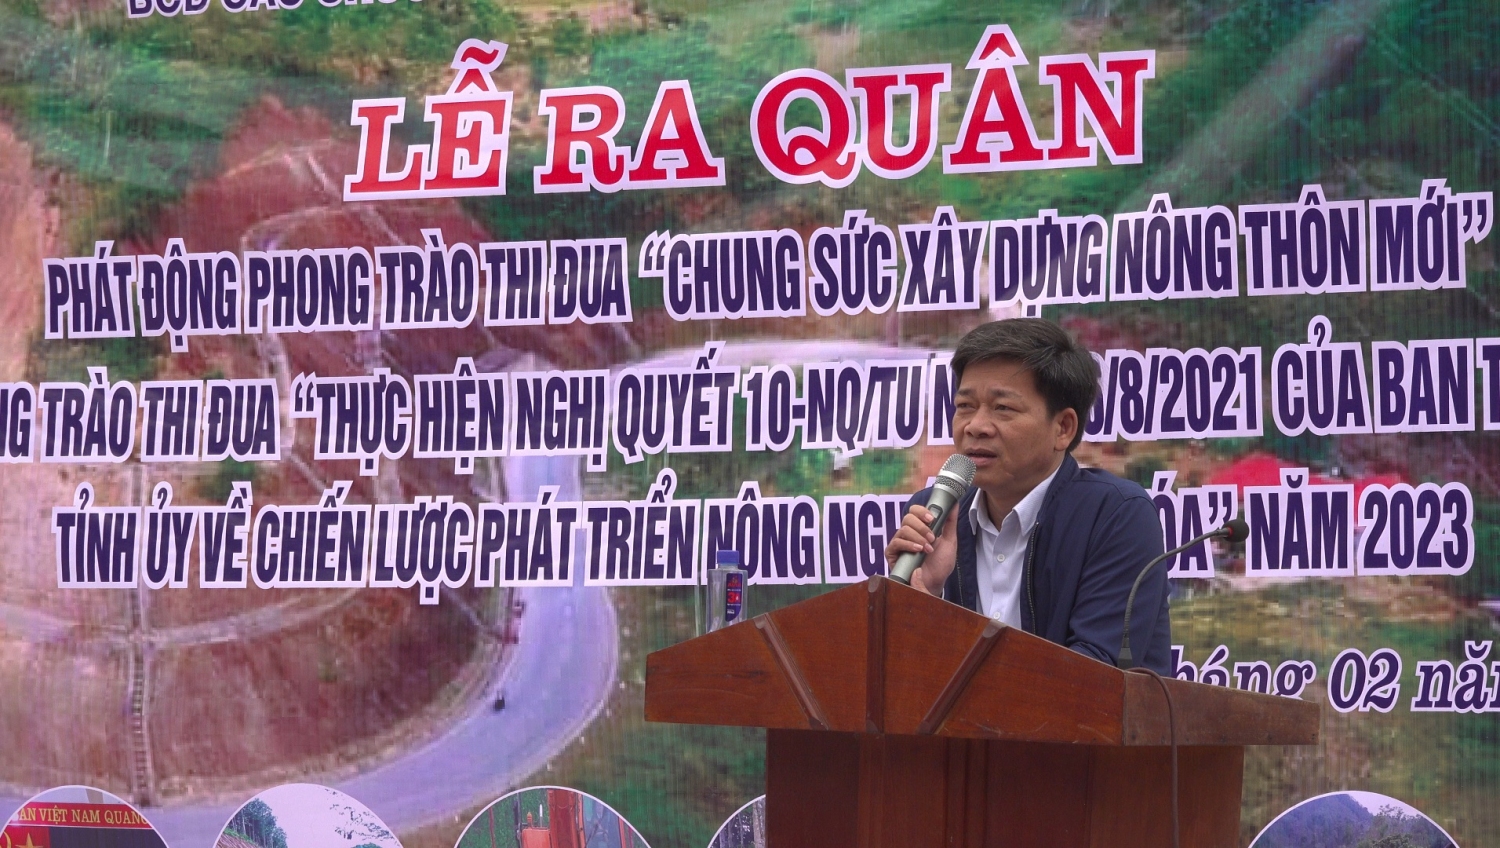 Đồng chí Nguyễn Việt Hà, Phó Chủ tịch UBND huyện phát biểu tại buổi lễ